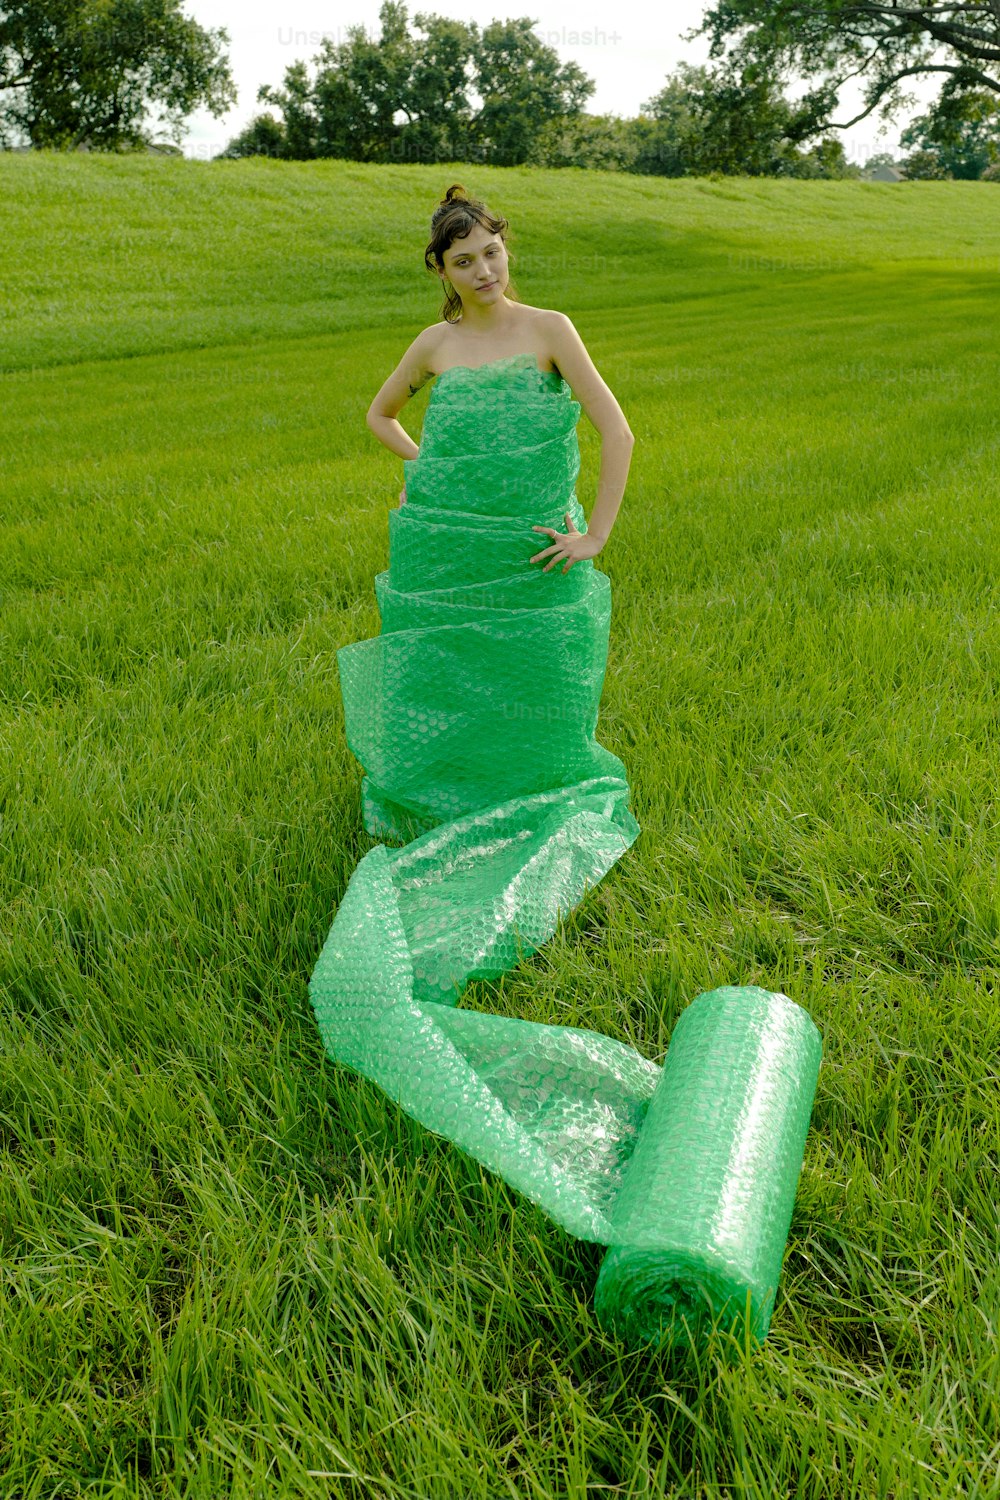 Une femme en robe verte debout dans un champ